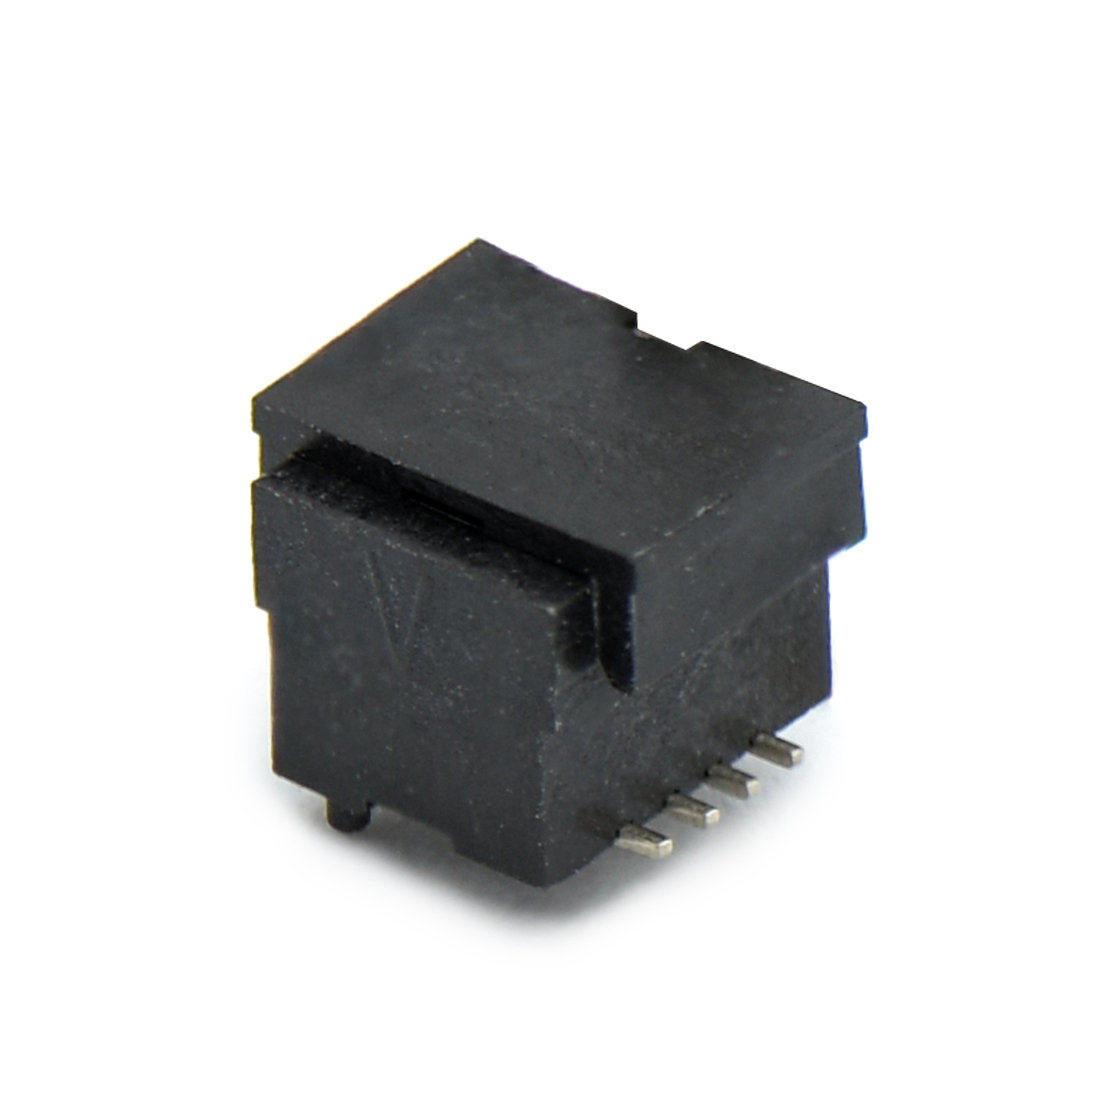 B0801板对板连接器Pitch 0.8 双槽H4.5 双排SMT型带柱母座 8Pin黑色 Gold flash